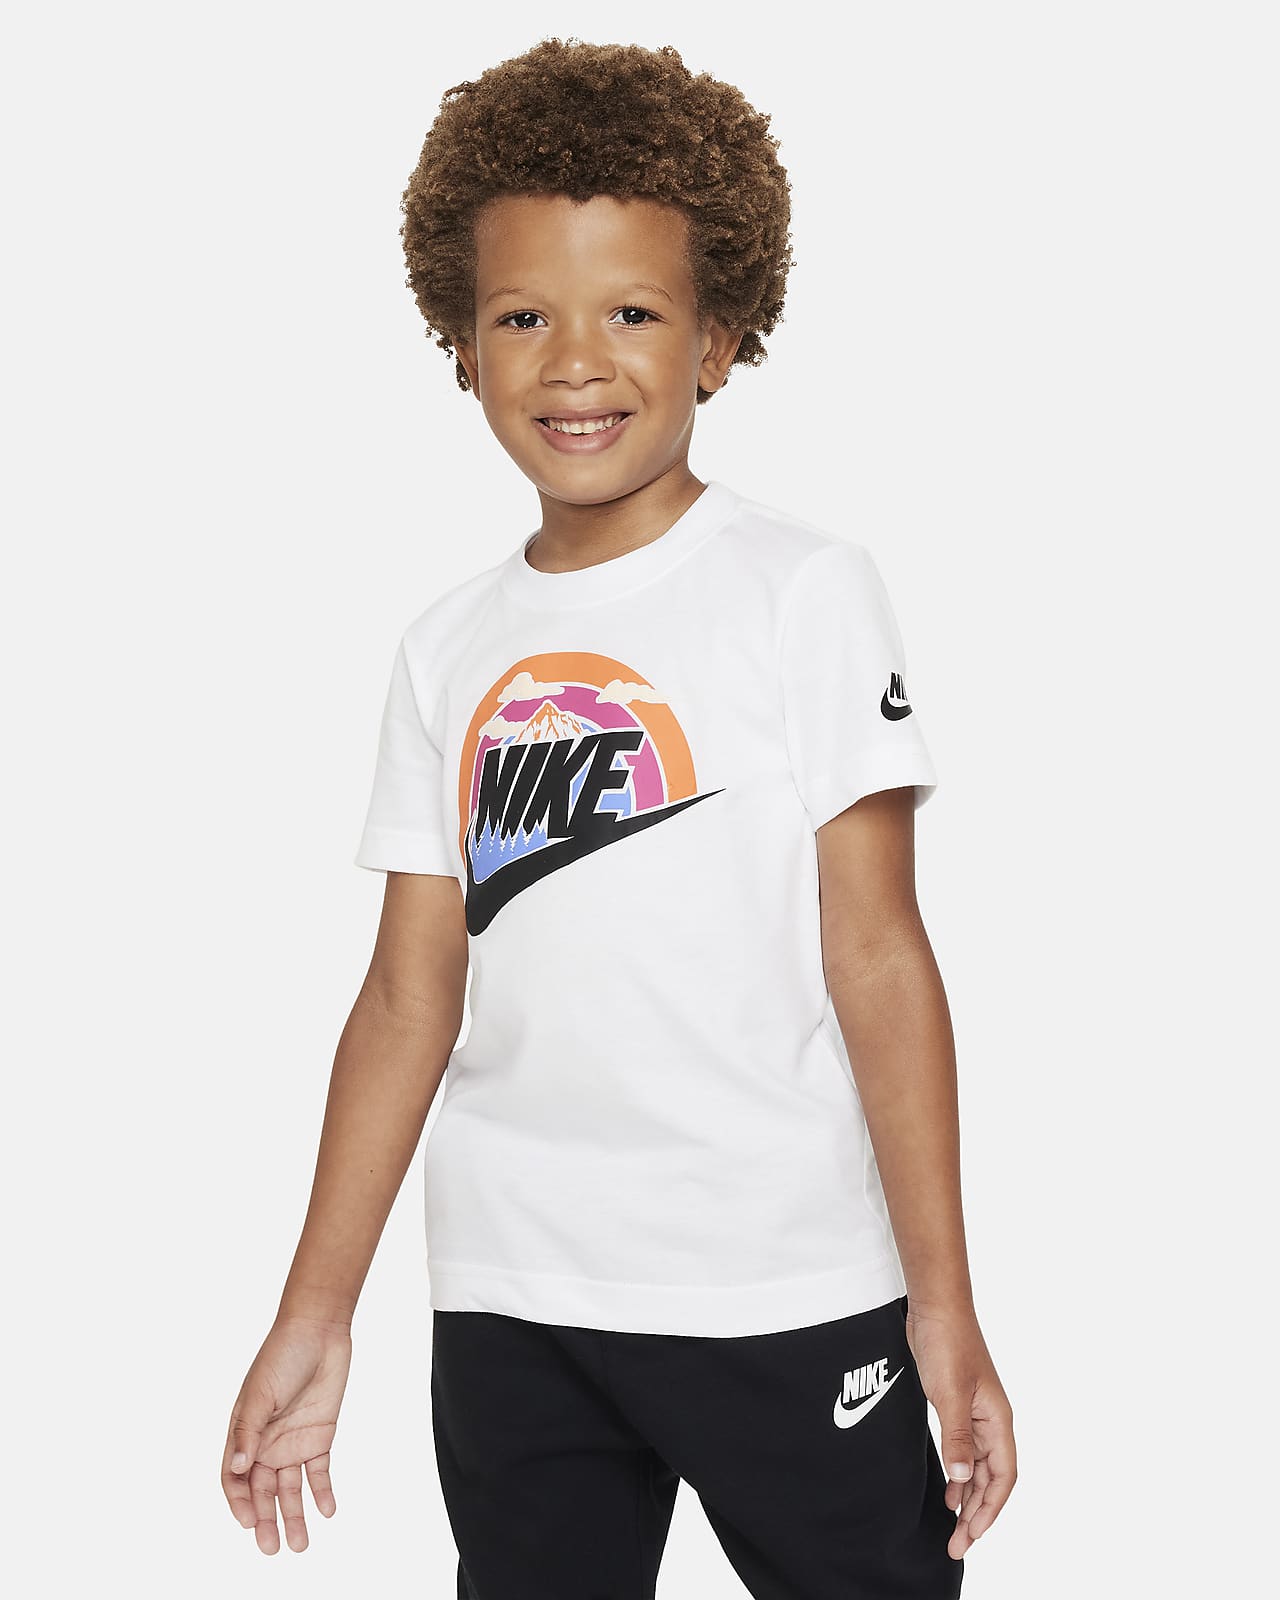 Tee Kids Nike Little T-Shirt. Futura Wilderness